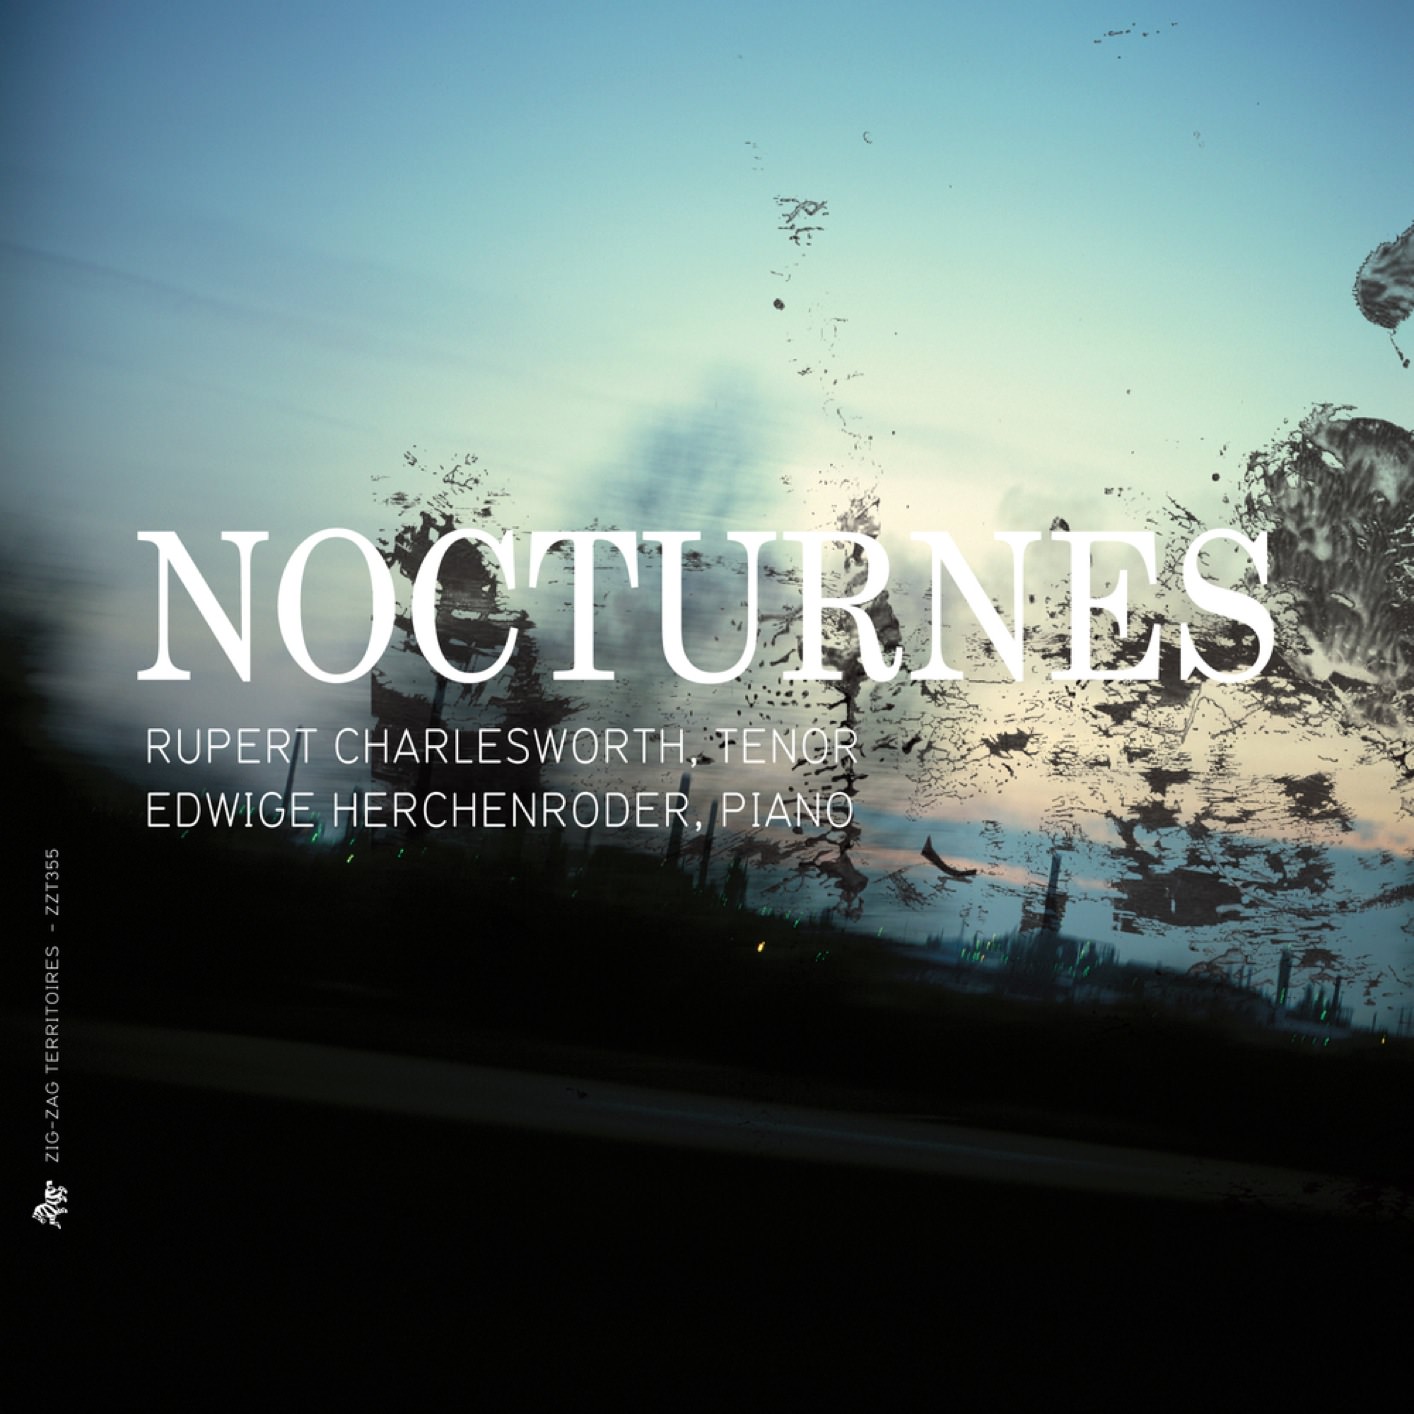 Rupert Charlesworth & Edwige Herchenroder – Nocturnes (2015) [FLAC 24bit/88,2kHz]